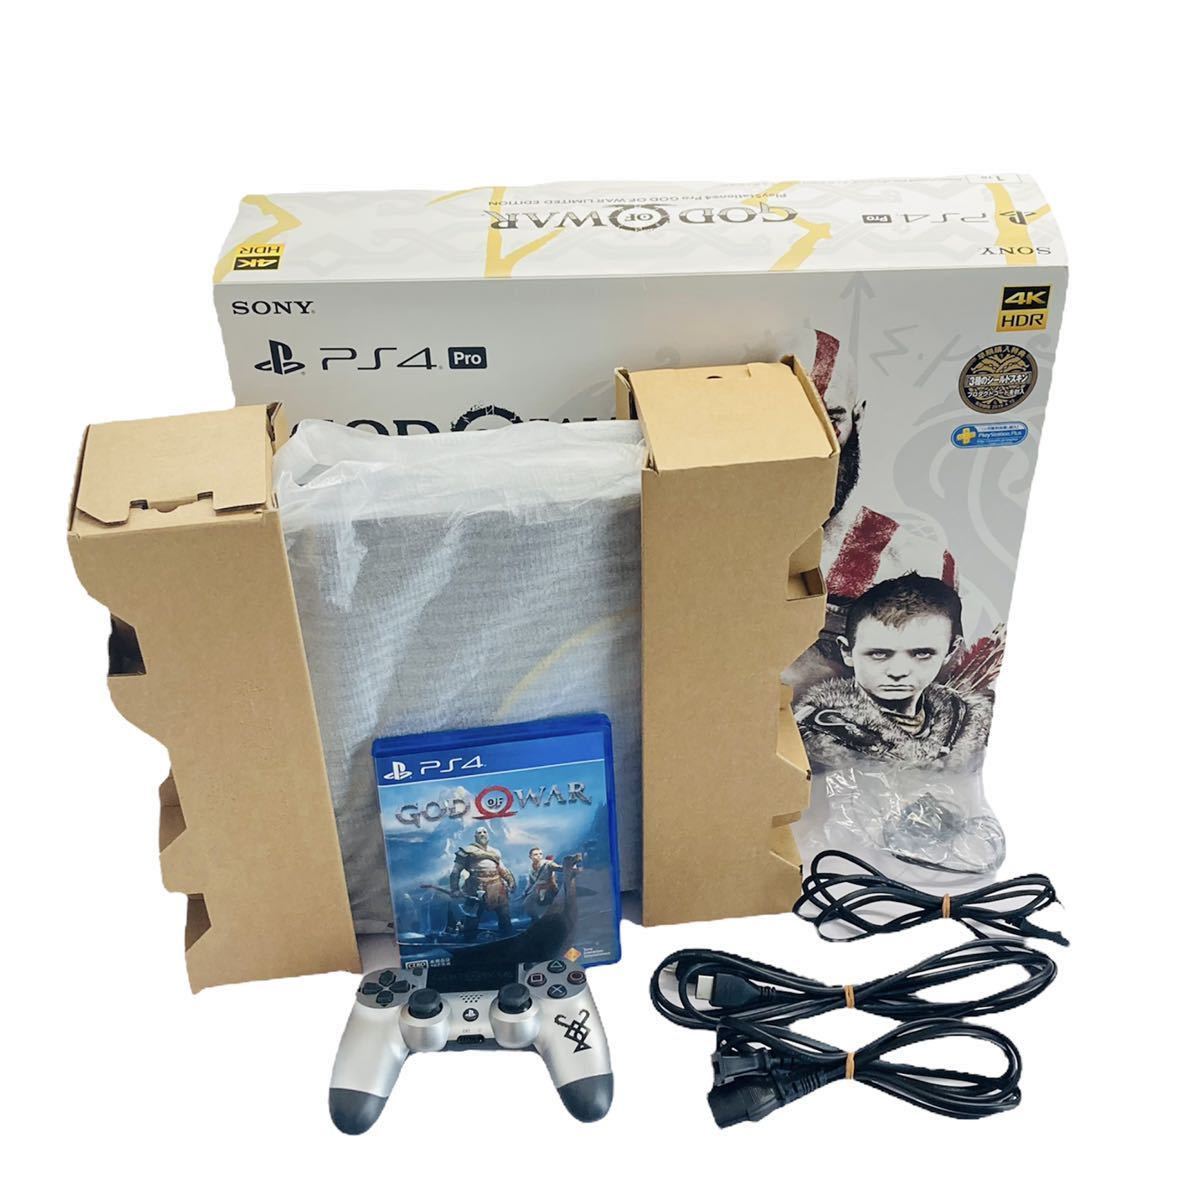 動作確認済】 SONY ゲーム機 本体 PS4 PlayStation4 Pro ゴッド・オブ・ウォー リミテッドエディション 1TB CUH- 7100B